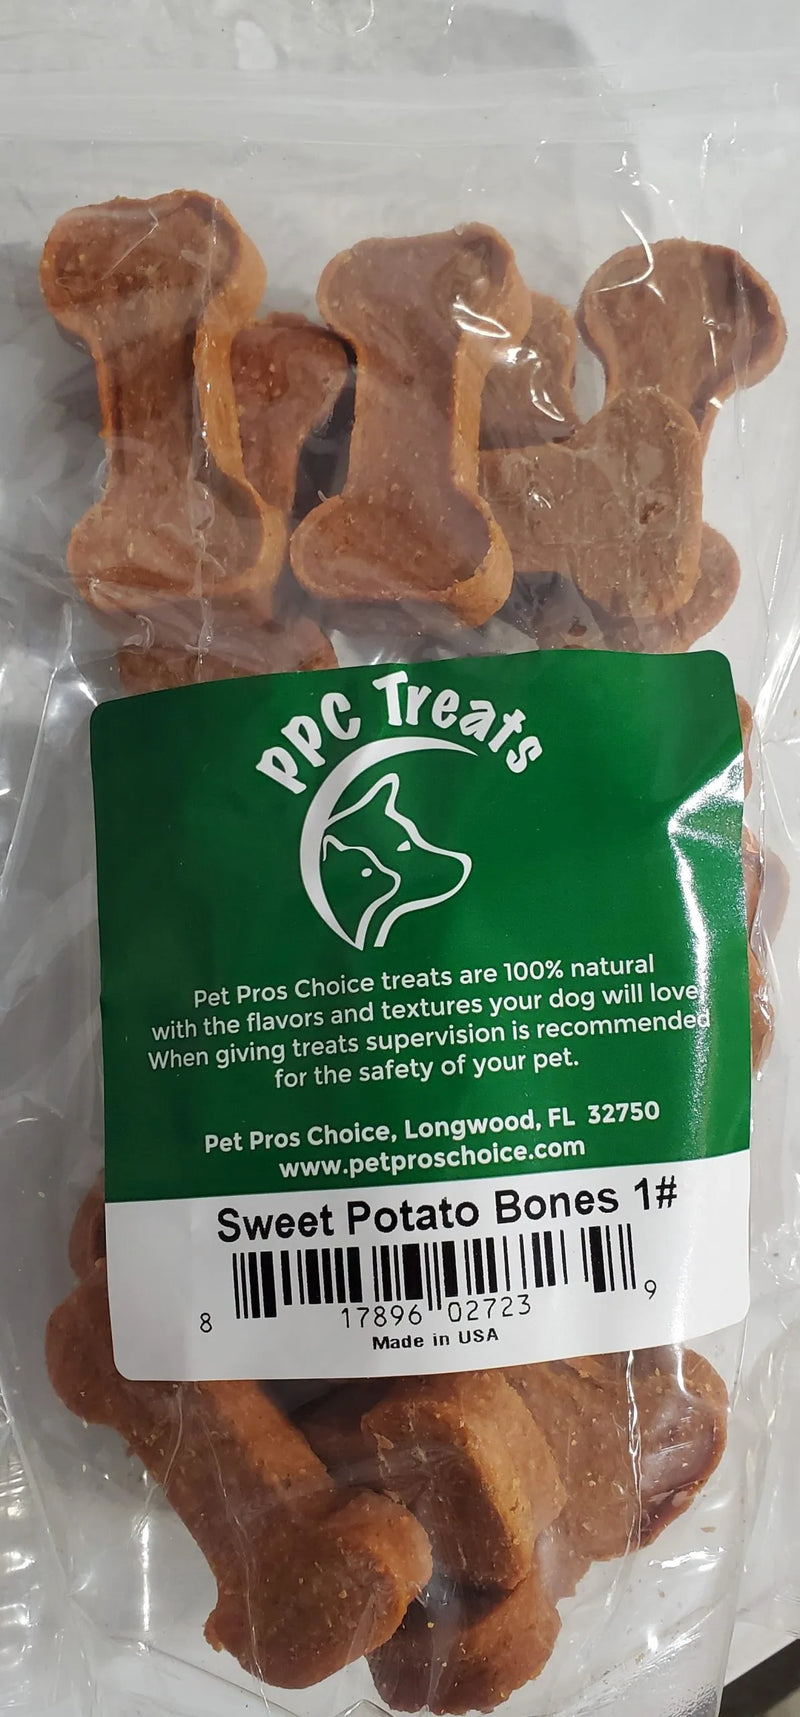 Sweet Potato Bones 1#